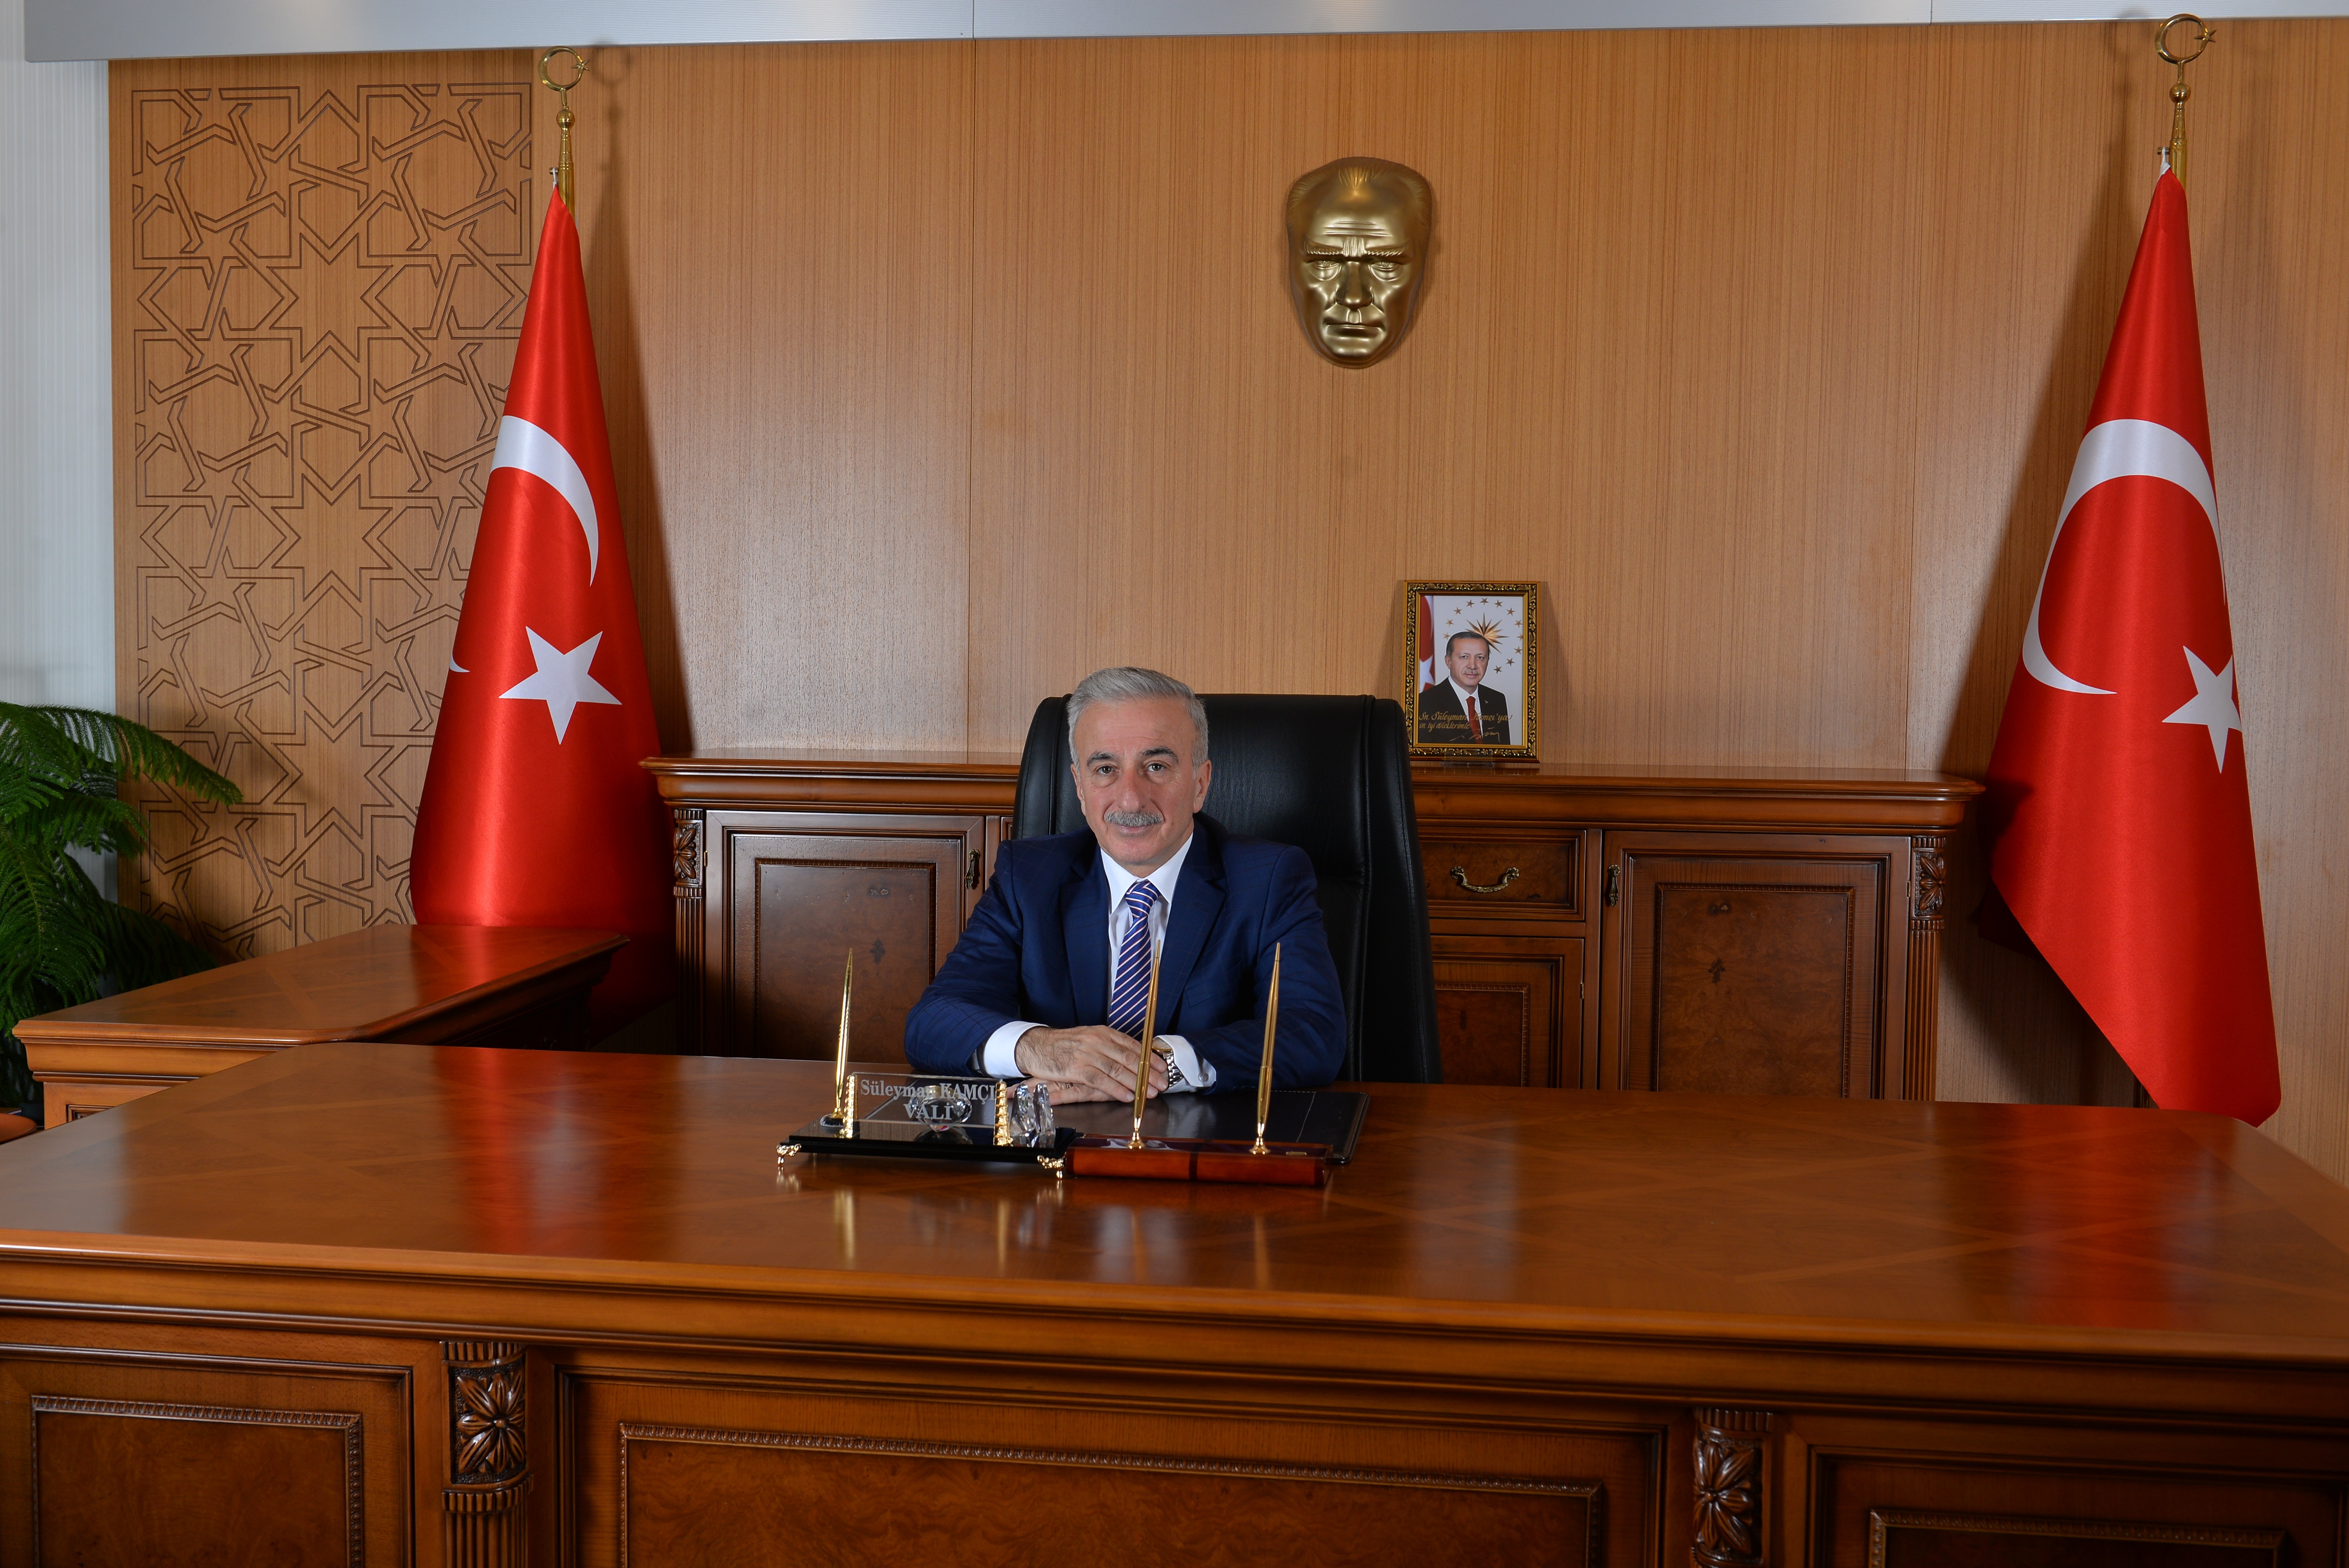 Vali Kamçı: “30 Ağustos Türk milletinin en zor şartlarda bile esir olmayacağının göstergesidir”